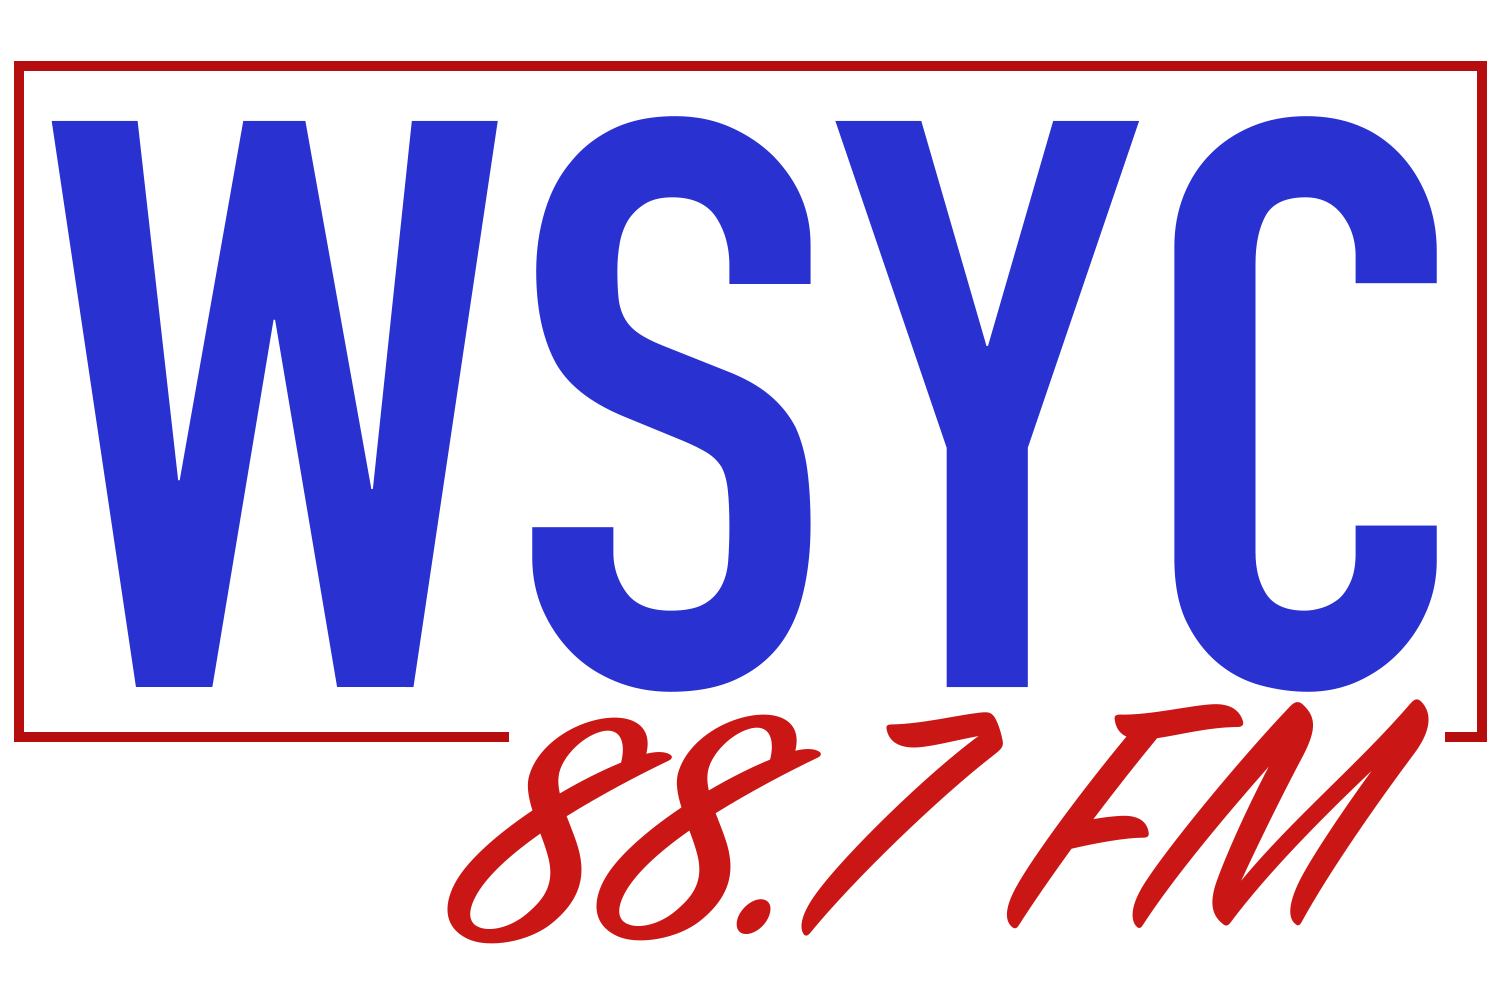 88.7 WSYC FM